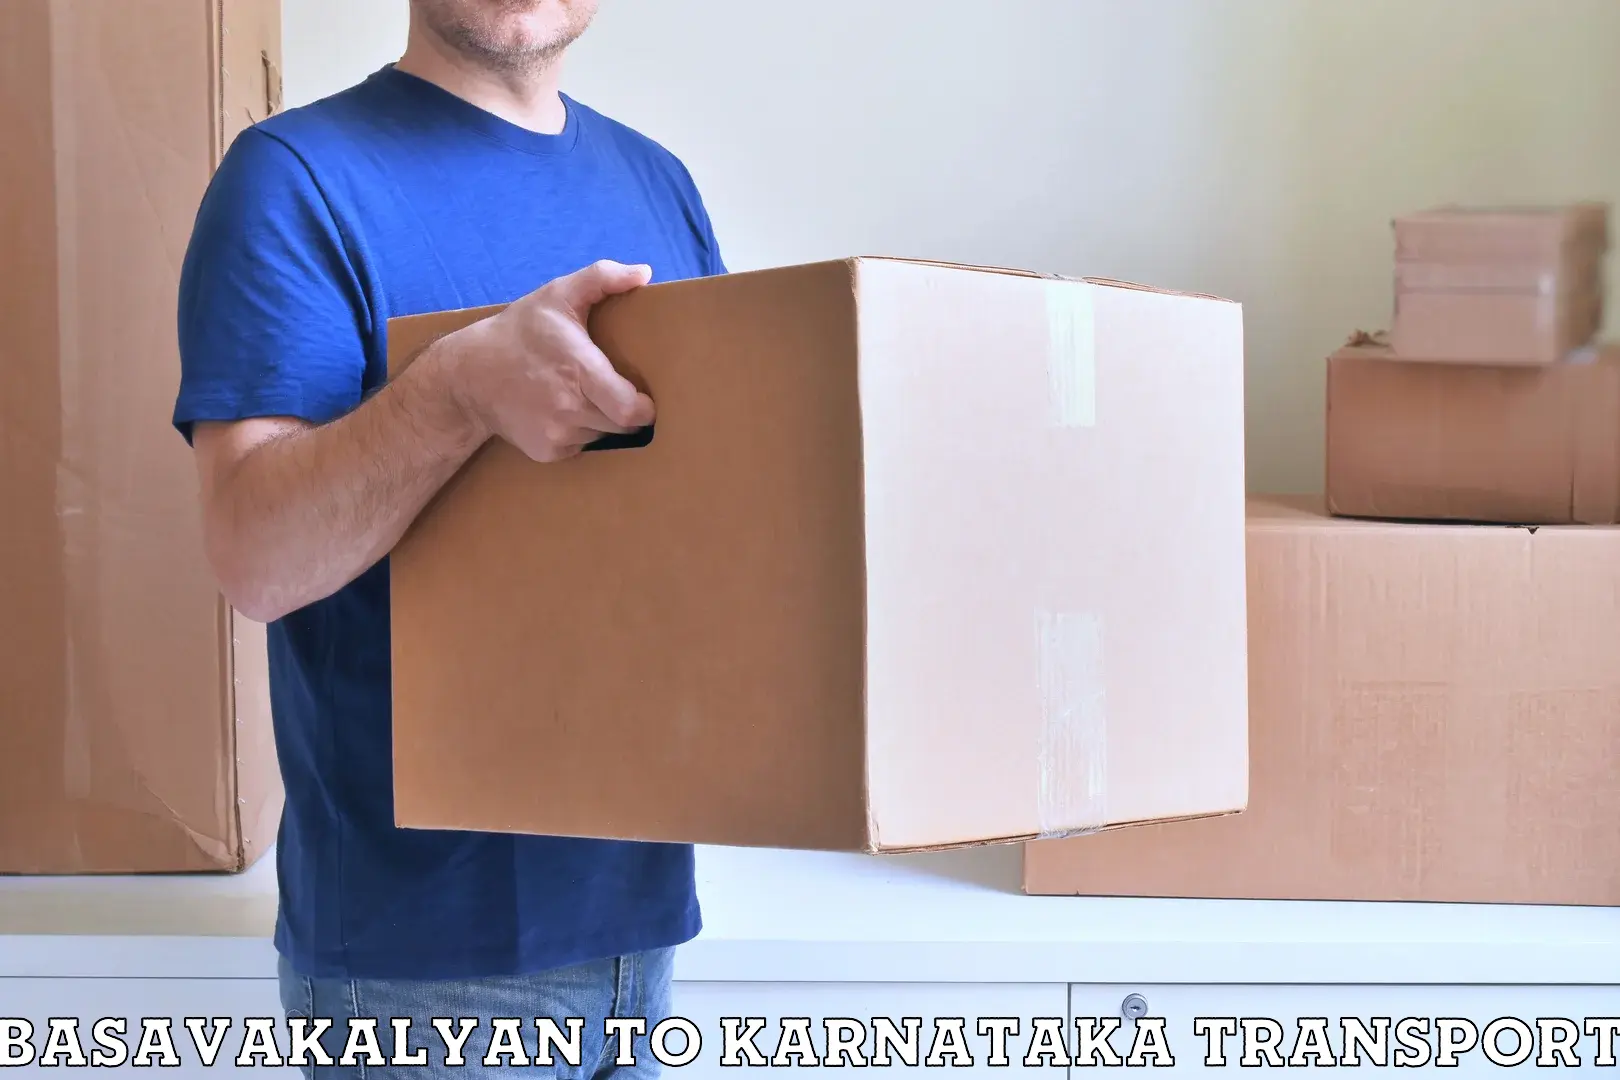 Container transport service Basavakalyan to Belagavi